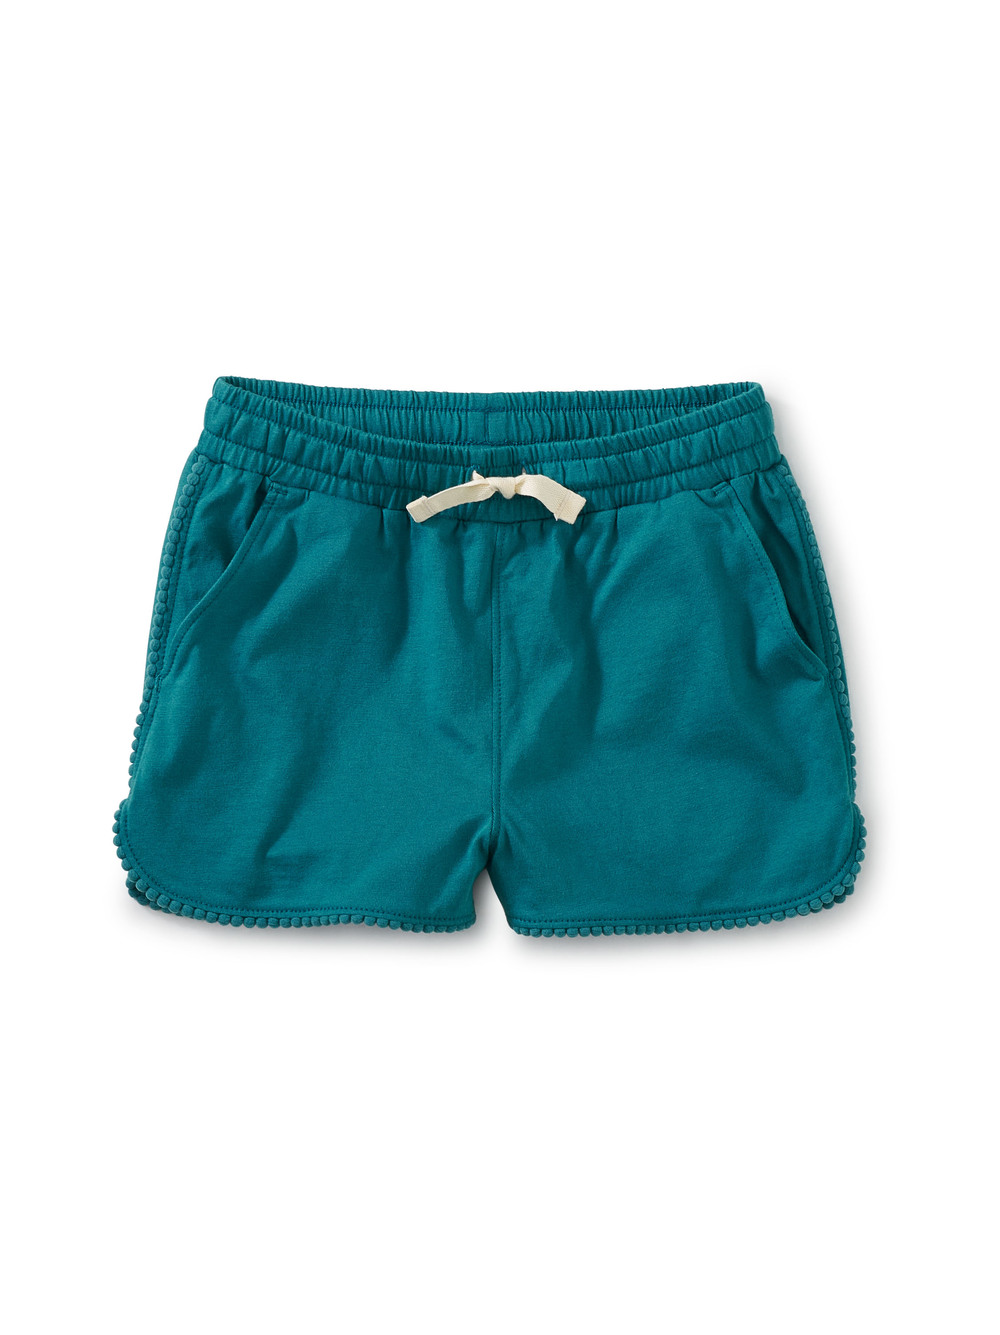 Pom-Pom Shorts